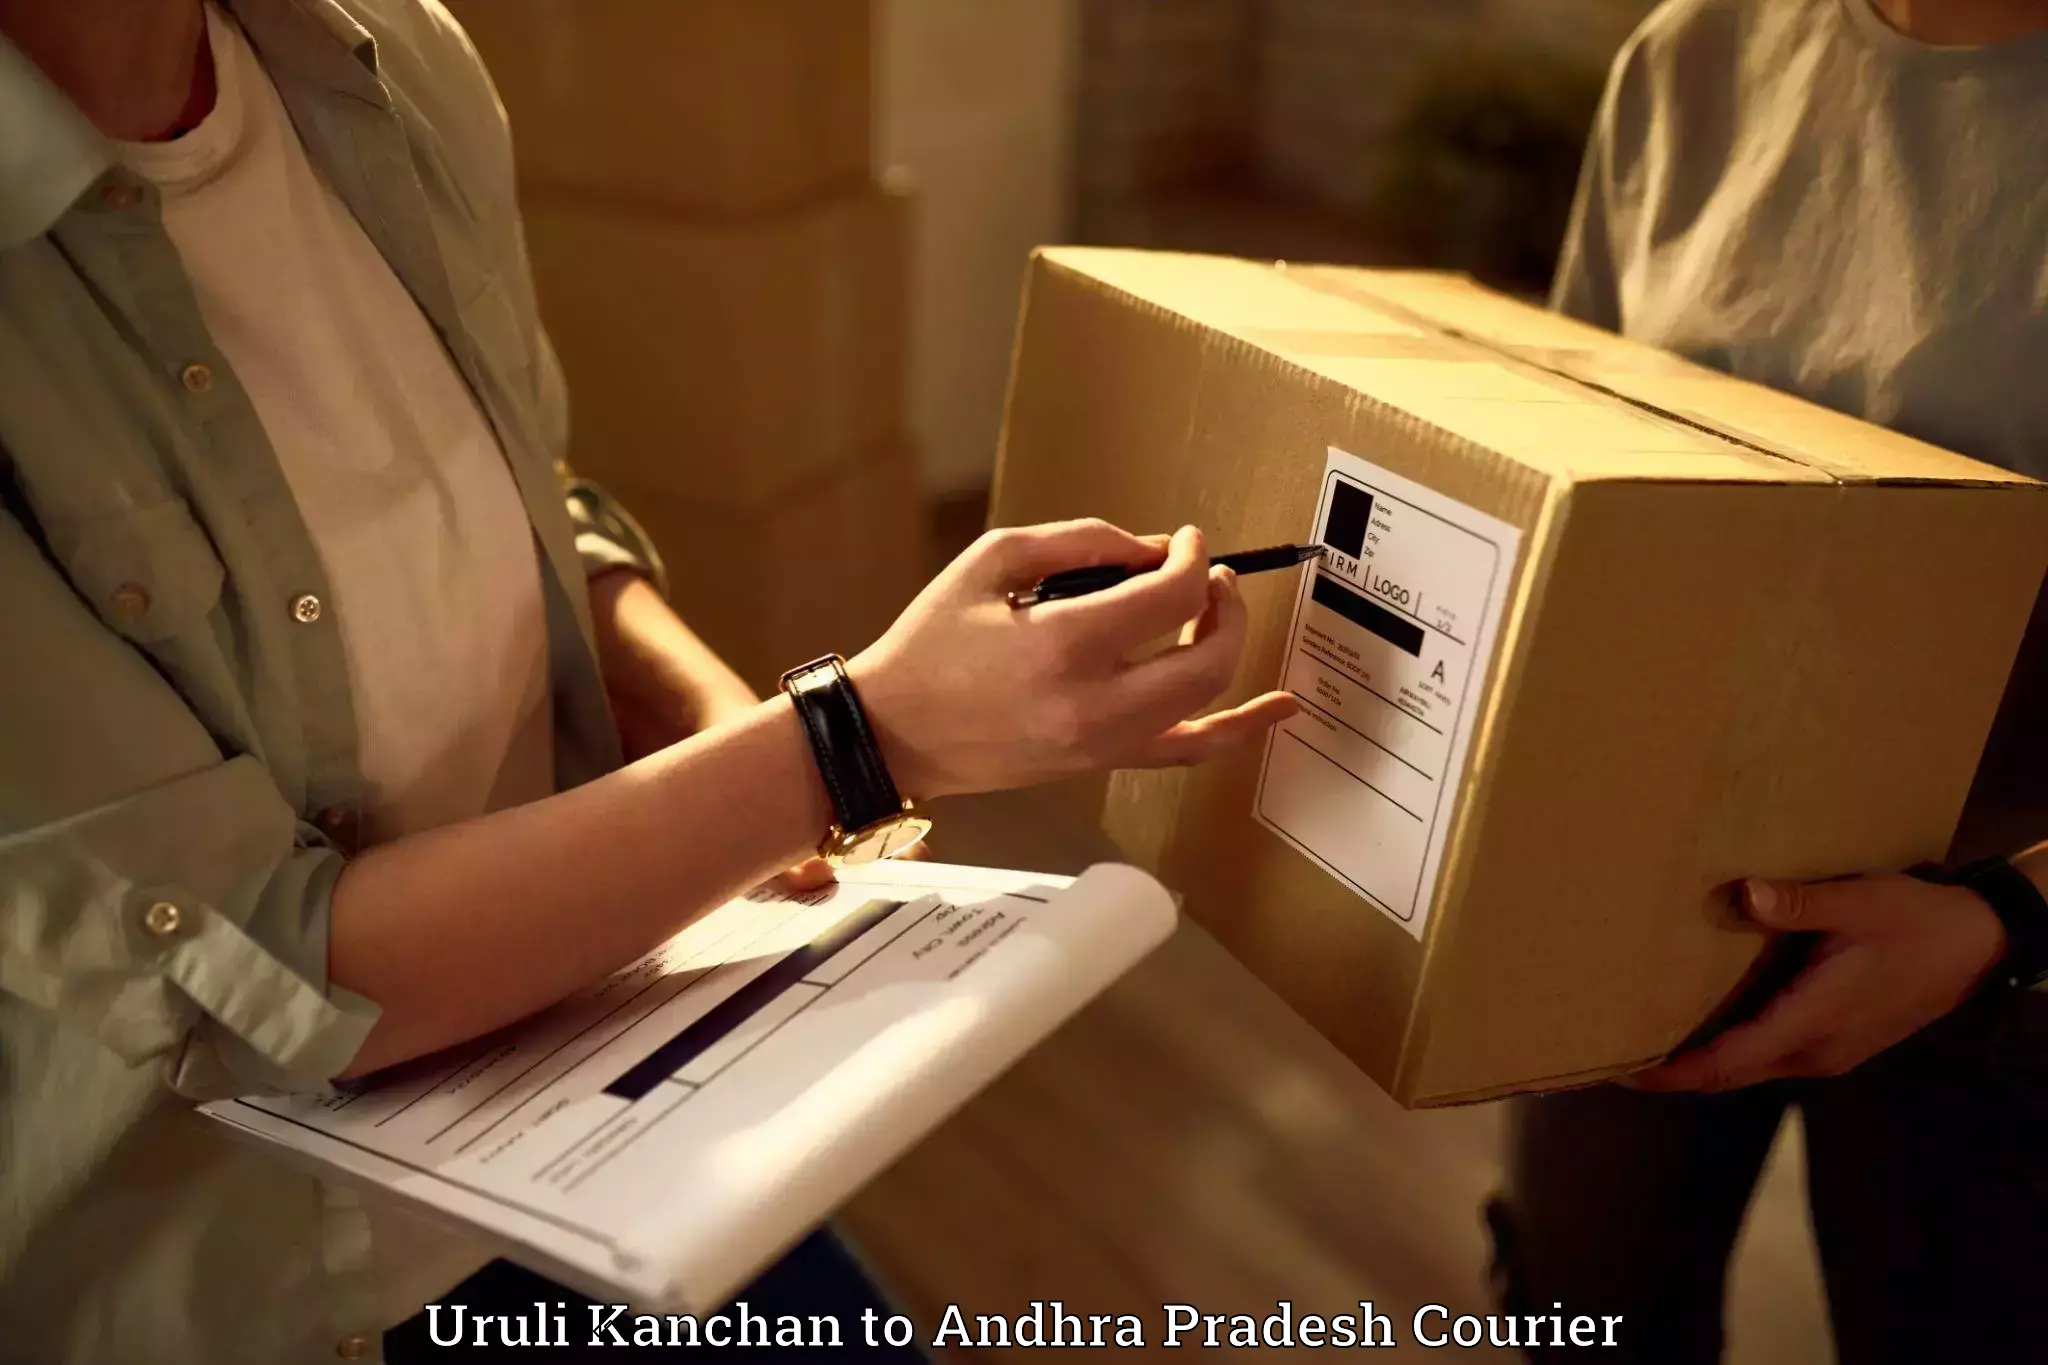 Efficient relocation services in Uruli Kanchan to Veldurthi